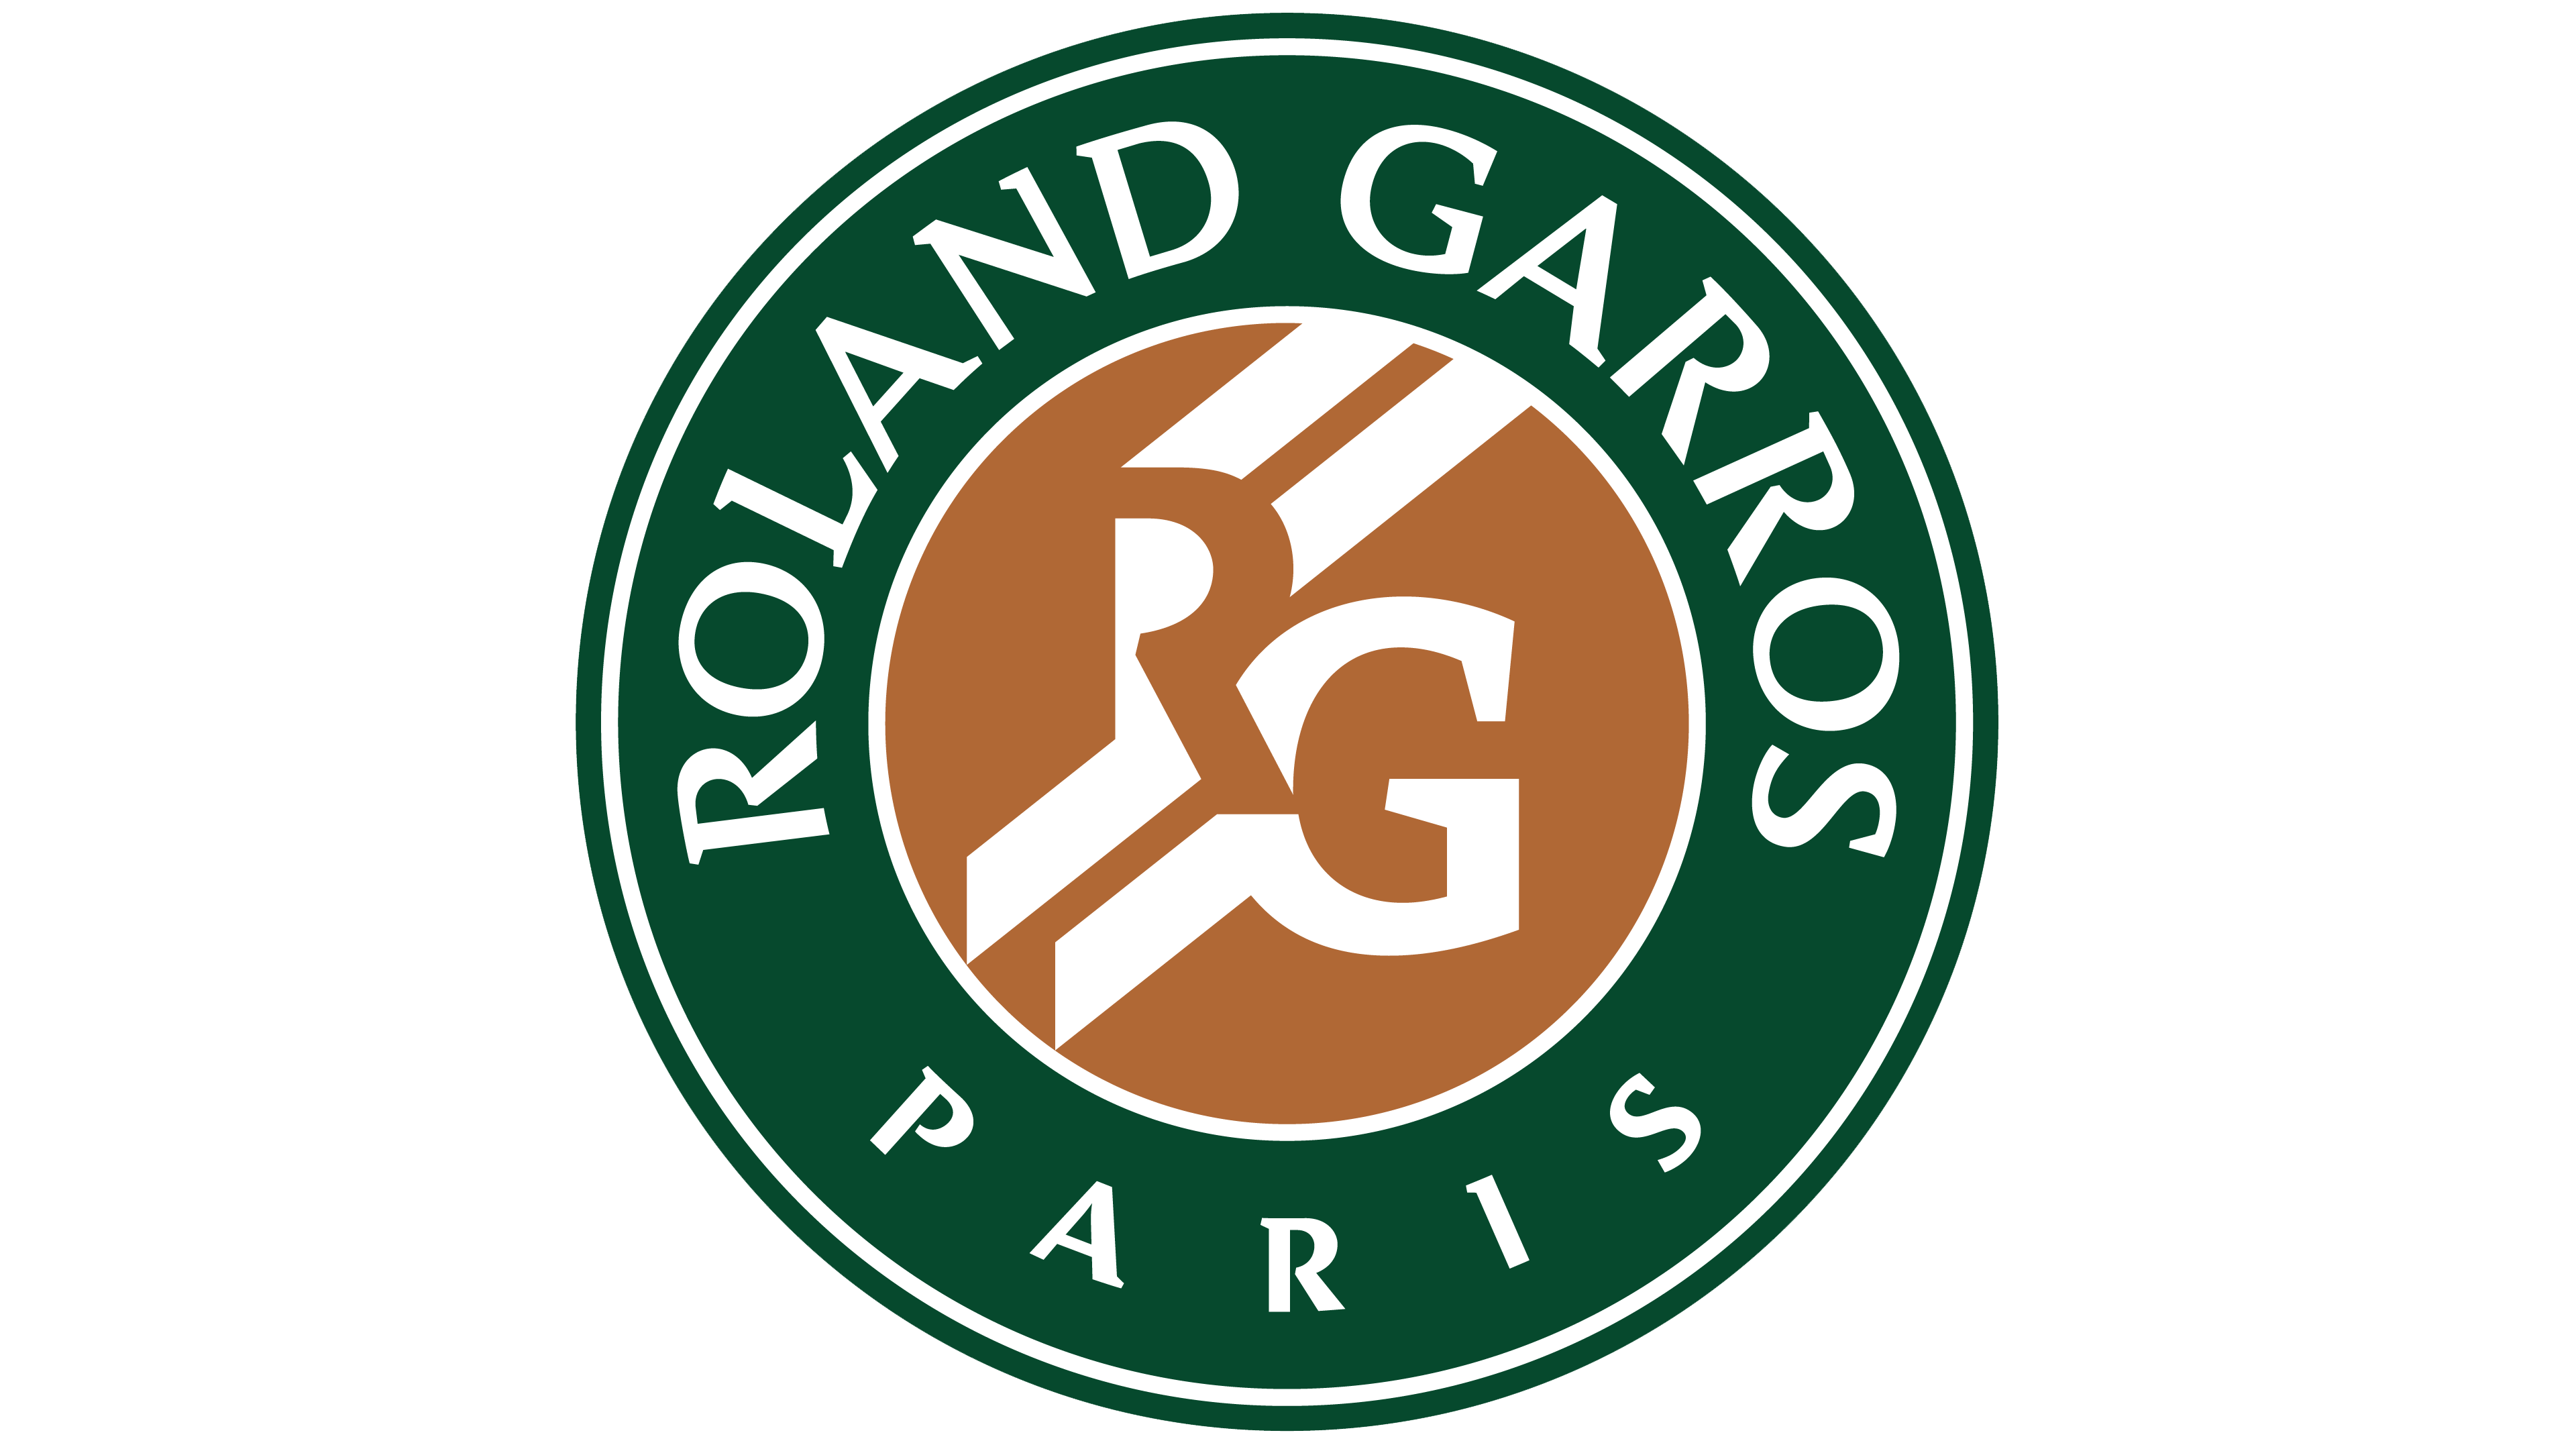 Roland Logo - Roland Garros logo - Interesting History of the Team Name and emblem